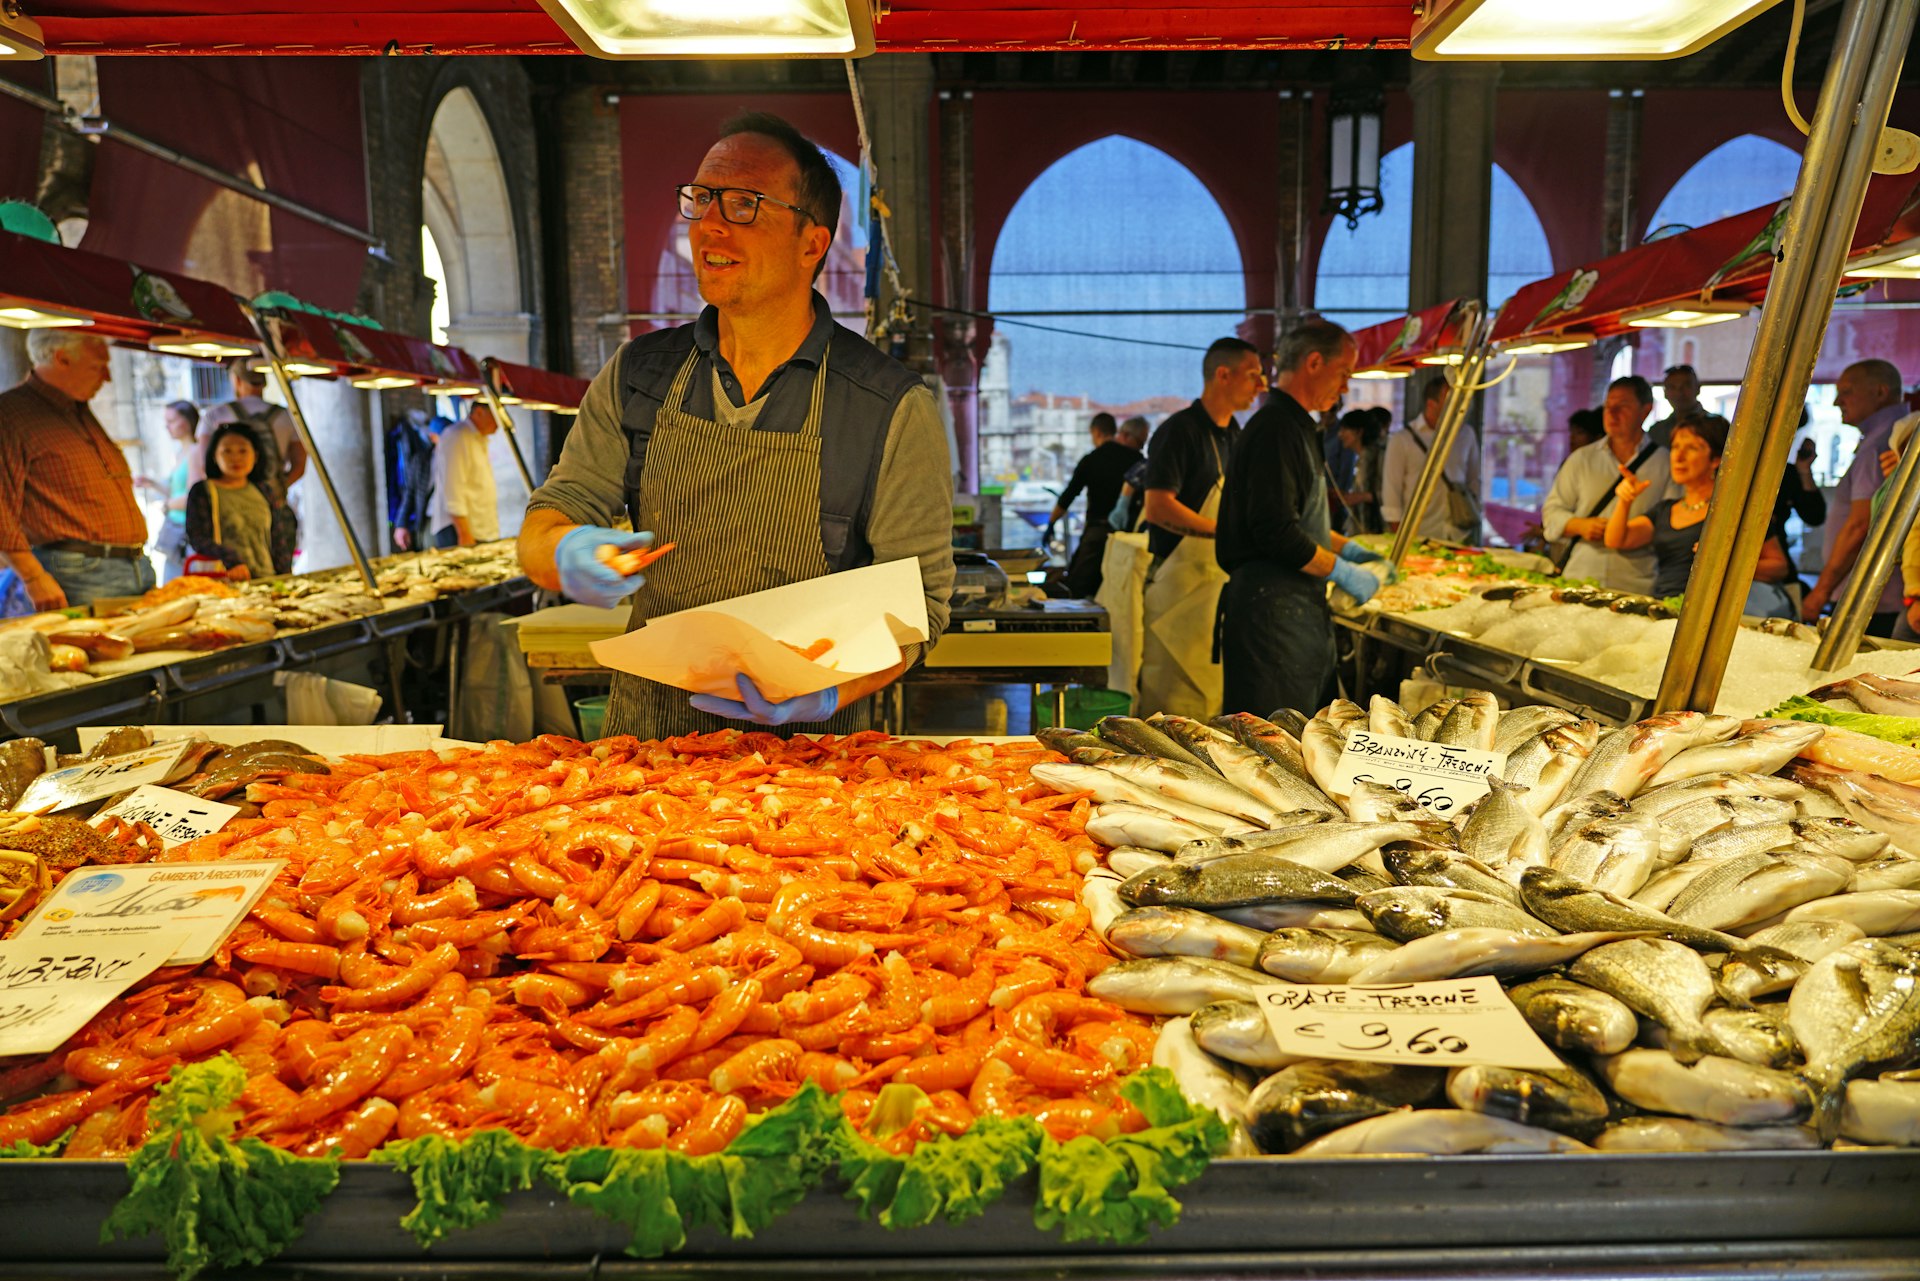 A man selling fresh seafood for sale at the Rialto farmers market (Mercato di Rialto) in Venice, near the Rialto Bridge and the Grand Canal.